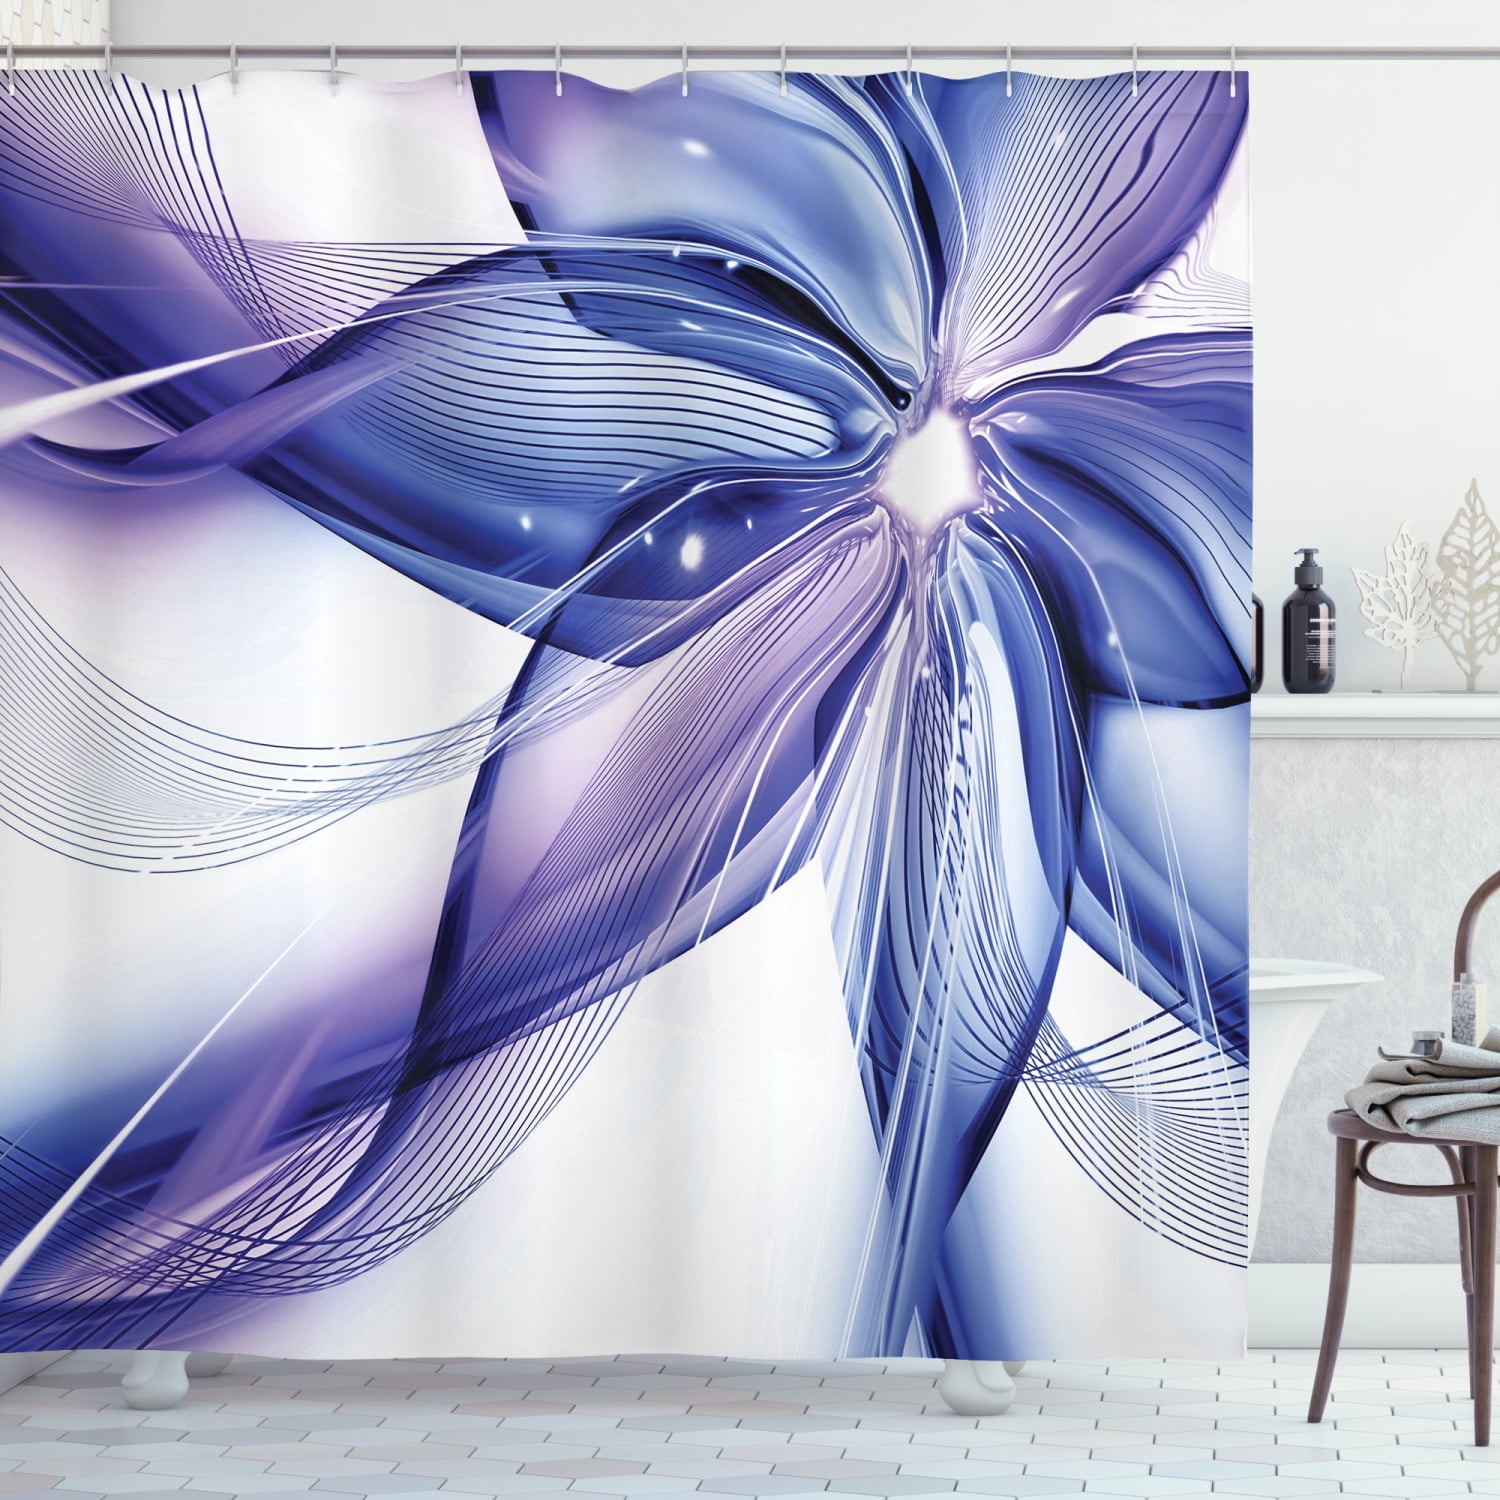 Shower Curtains 180cm x 180cm various plain striped designs Includes 12 Hooks 